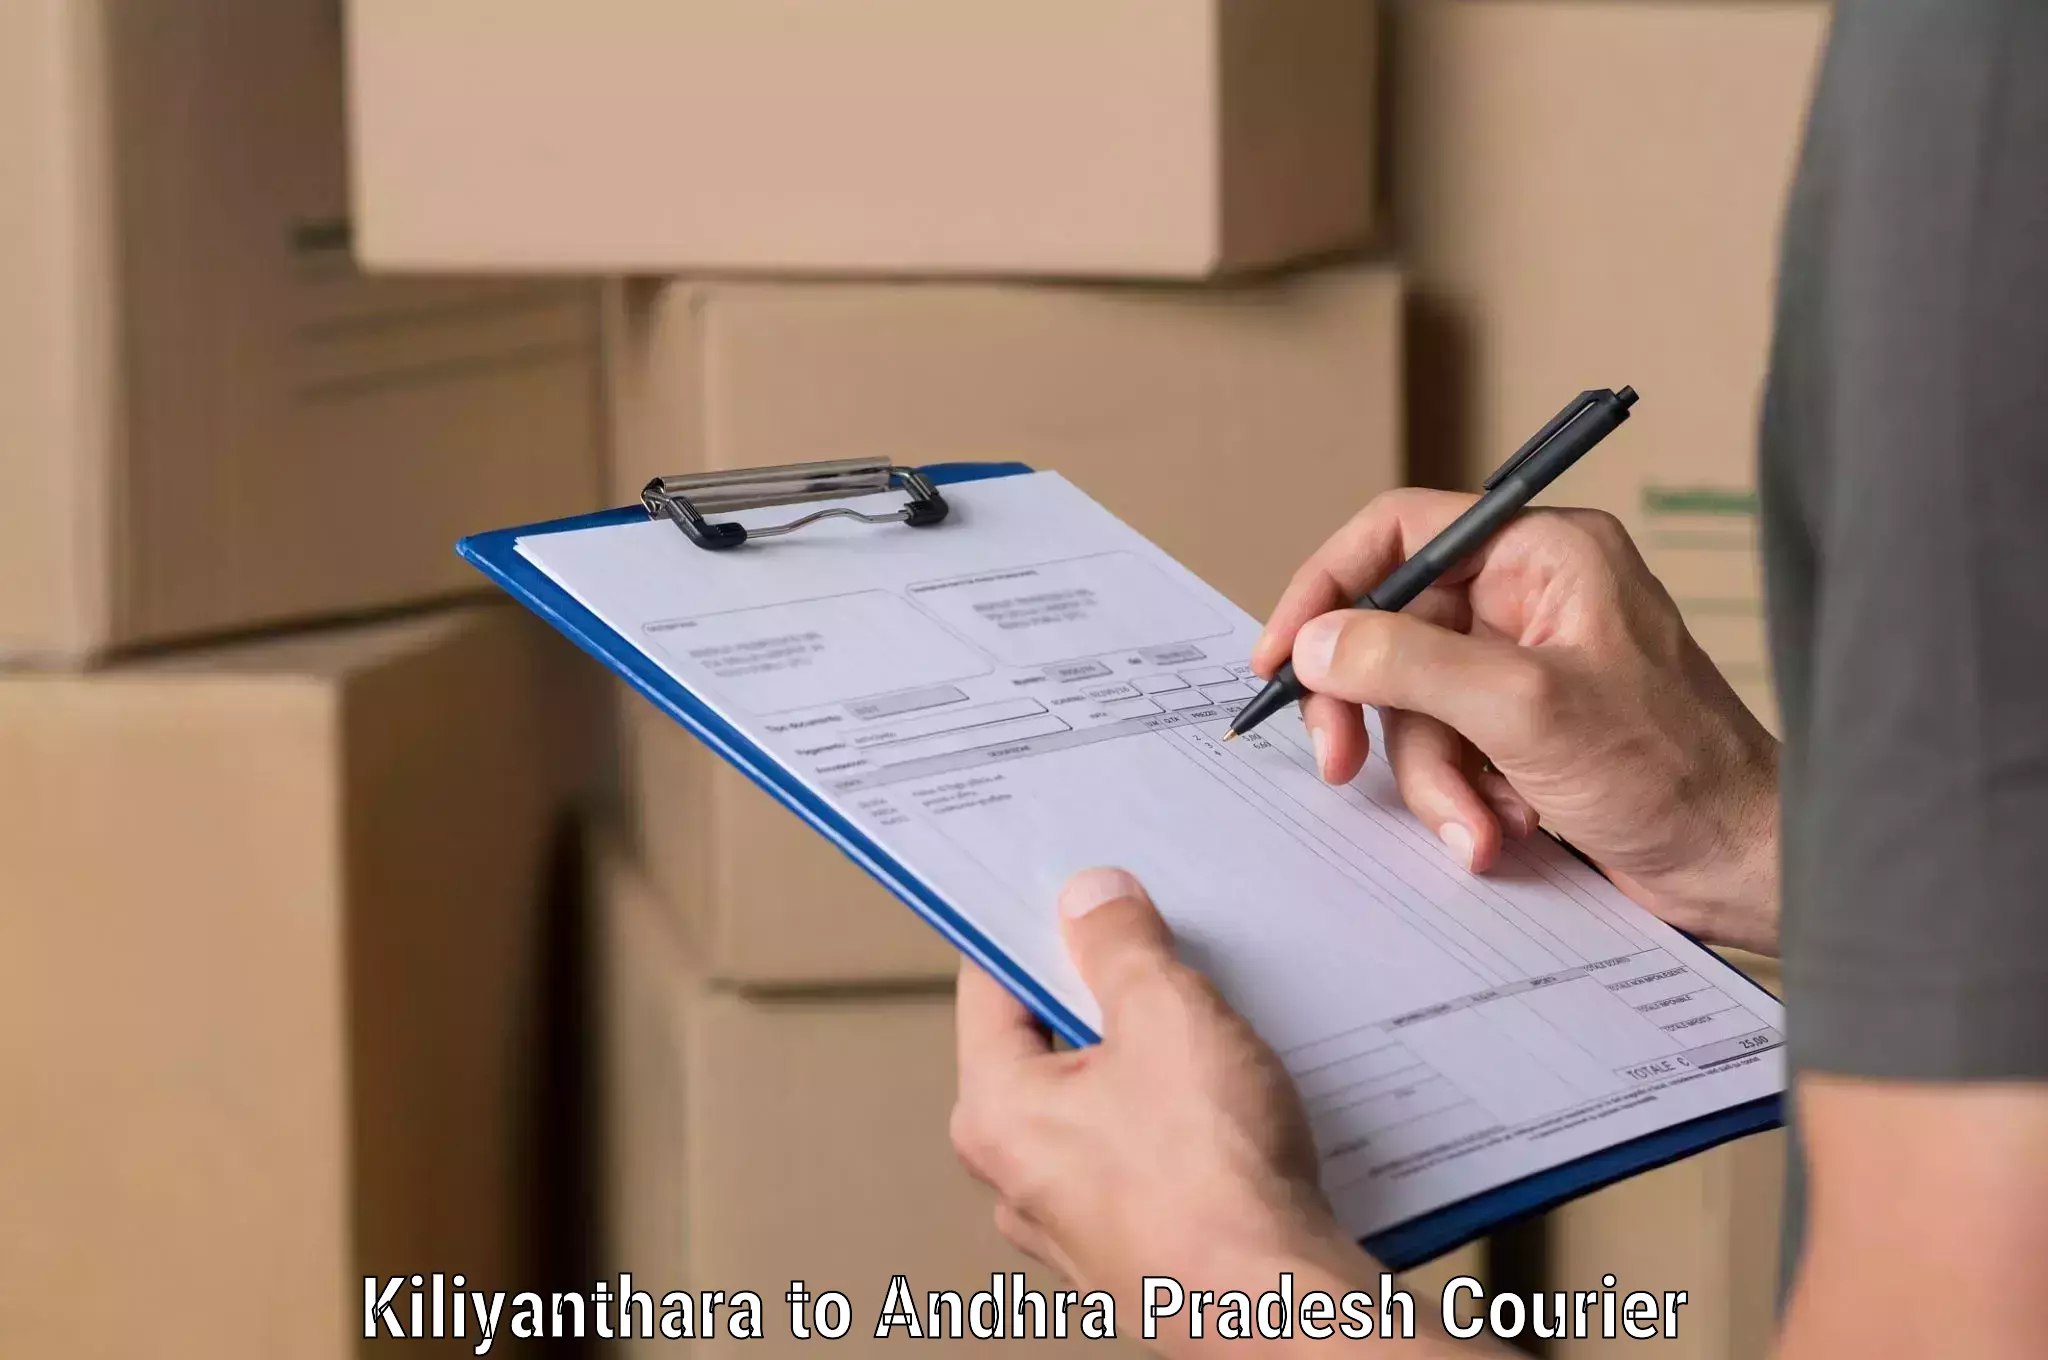 Logistics efficiency in Kiliyanthara to Koyyalgudem